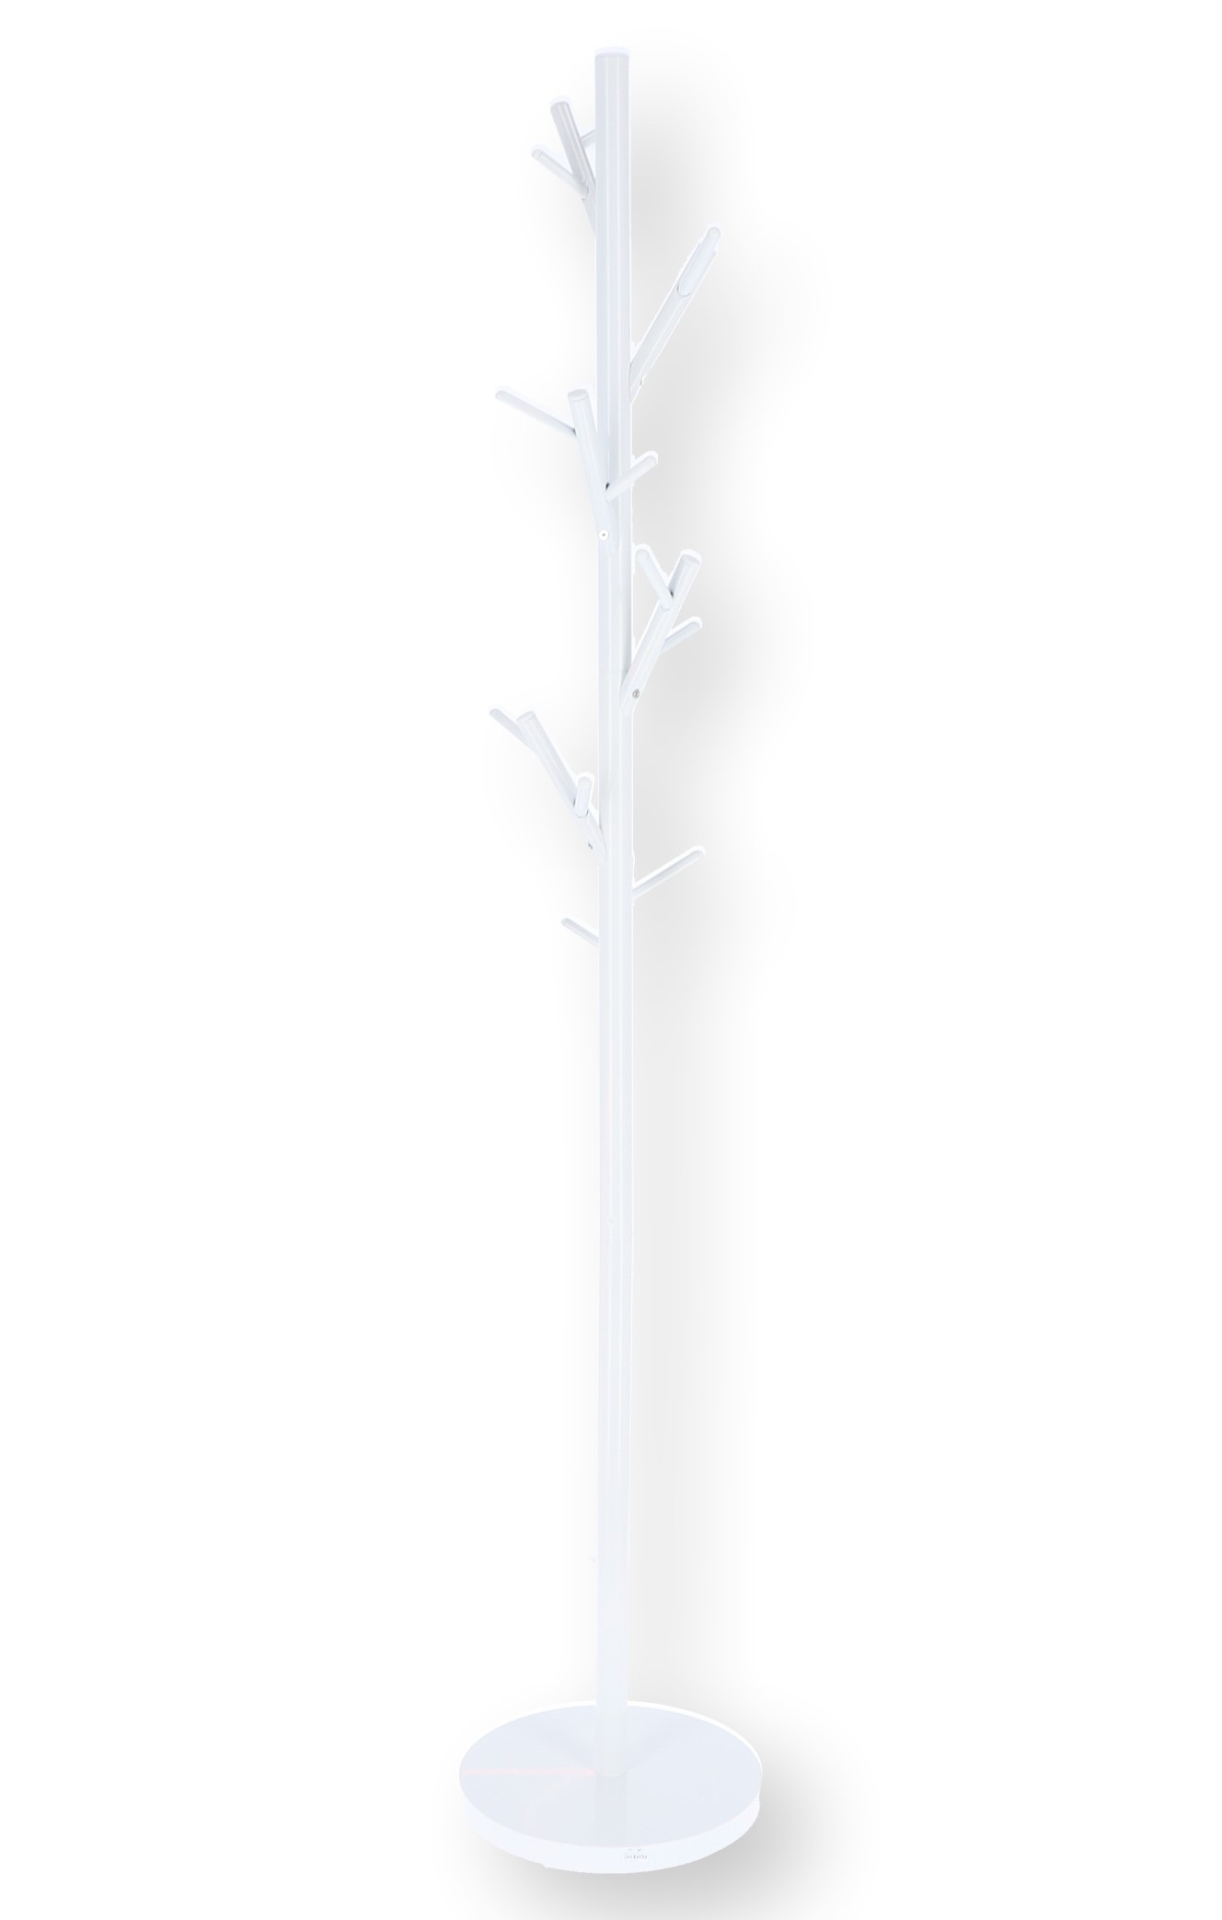 Der durch seine Form auffällige Kleiderständer Tree wurde aus Metall gefertigt, welches eine weiße Farbe hat. Er verfügt über ausreichend Haken und ist ein Produkt der Marke Jan Kurtz.